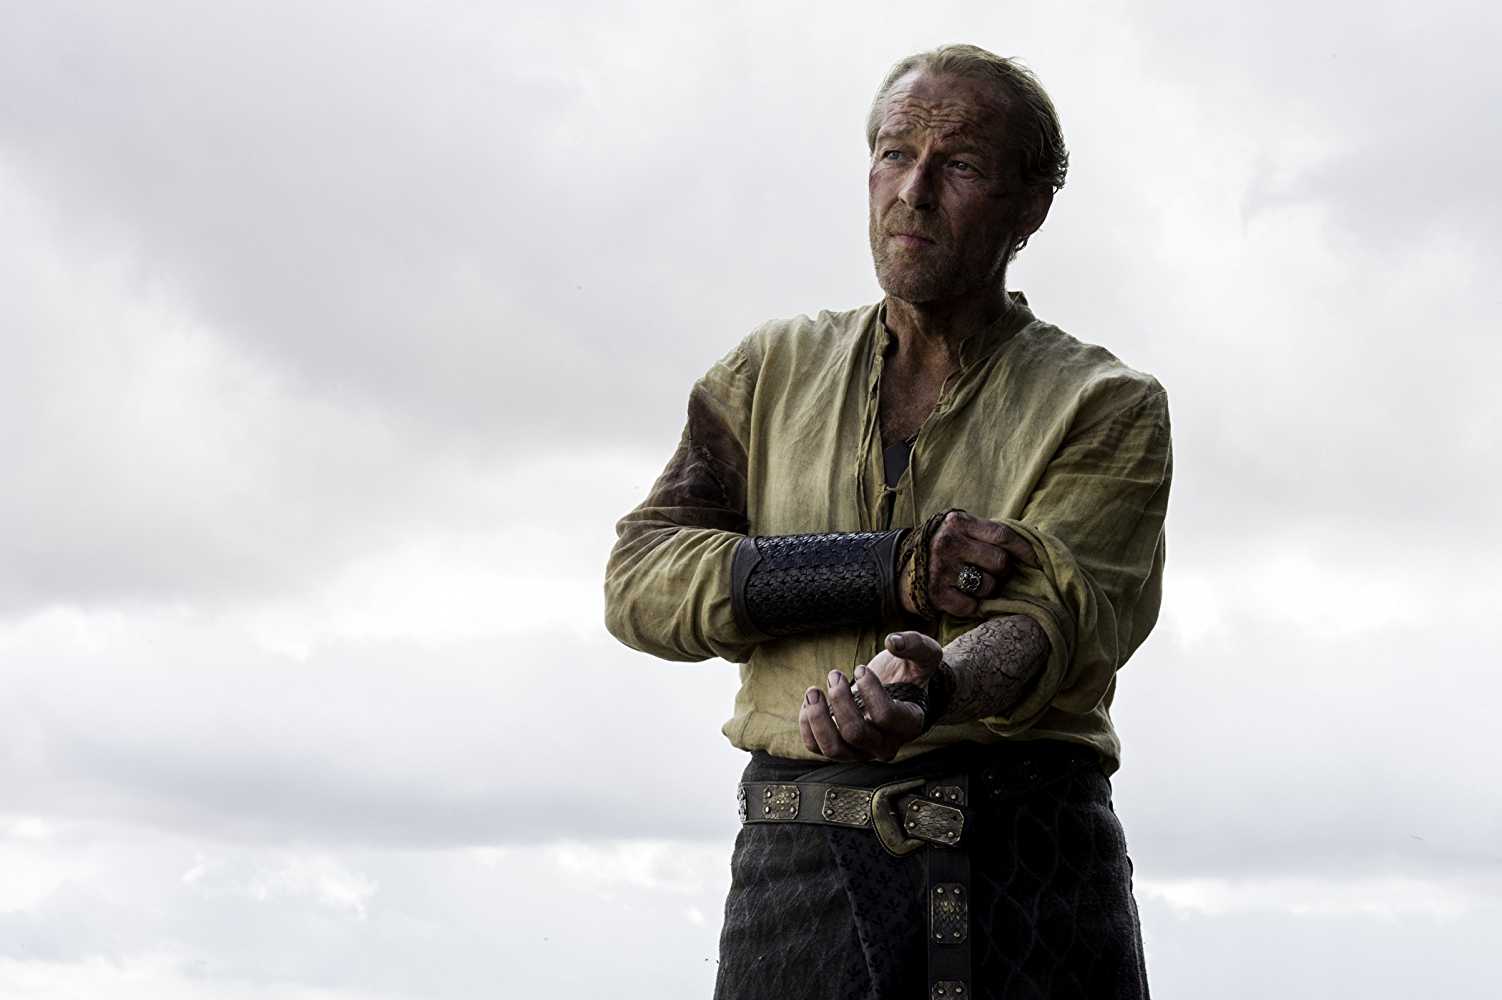 Iain Glen as Jorah Mormont in 'Game of Thrones'.
(Source: IMDB)